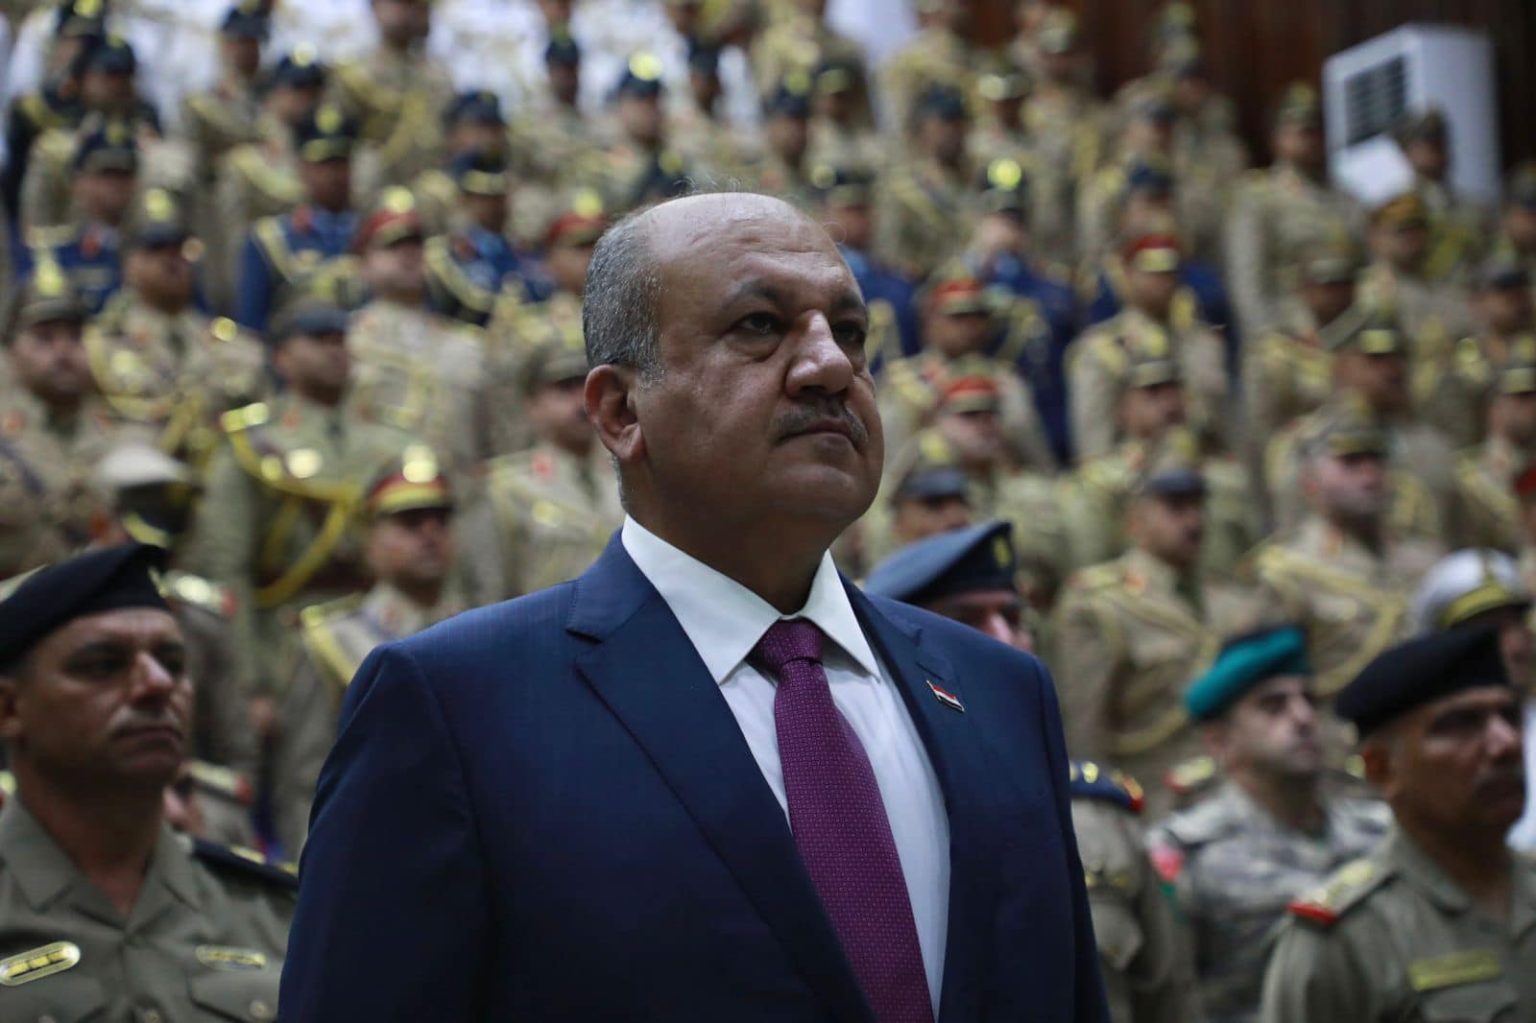 وزير الدفاع لمنتسبي الجيش العراقي: مارسوا حقكم دون فرض رأي او إجبار